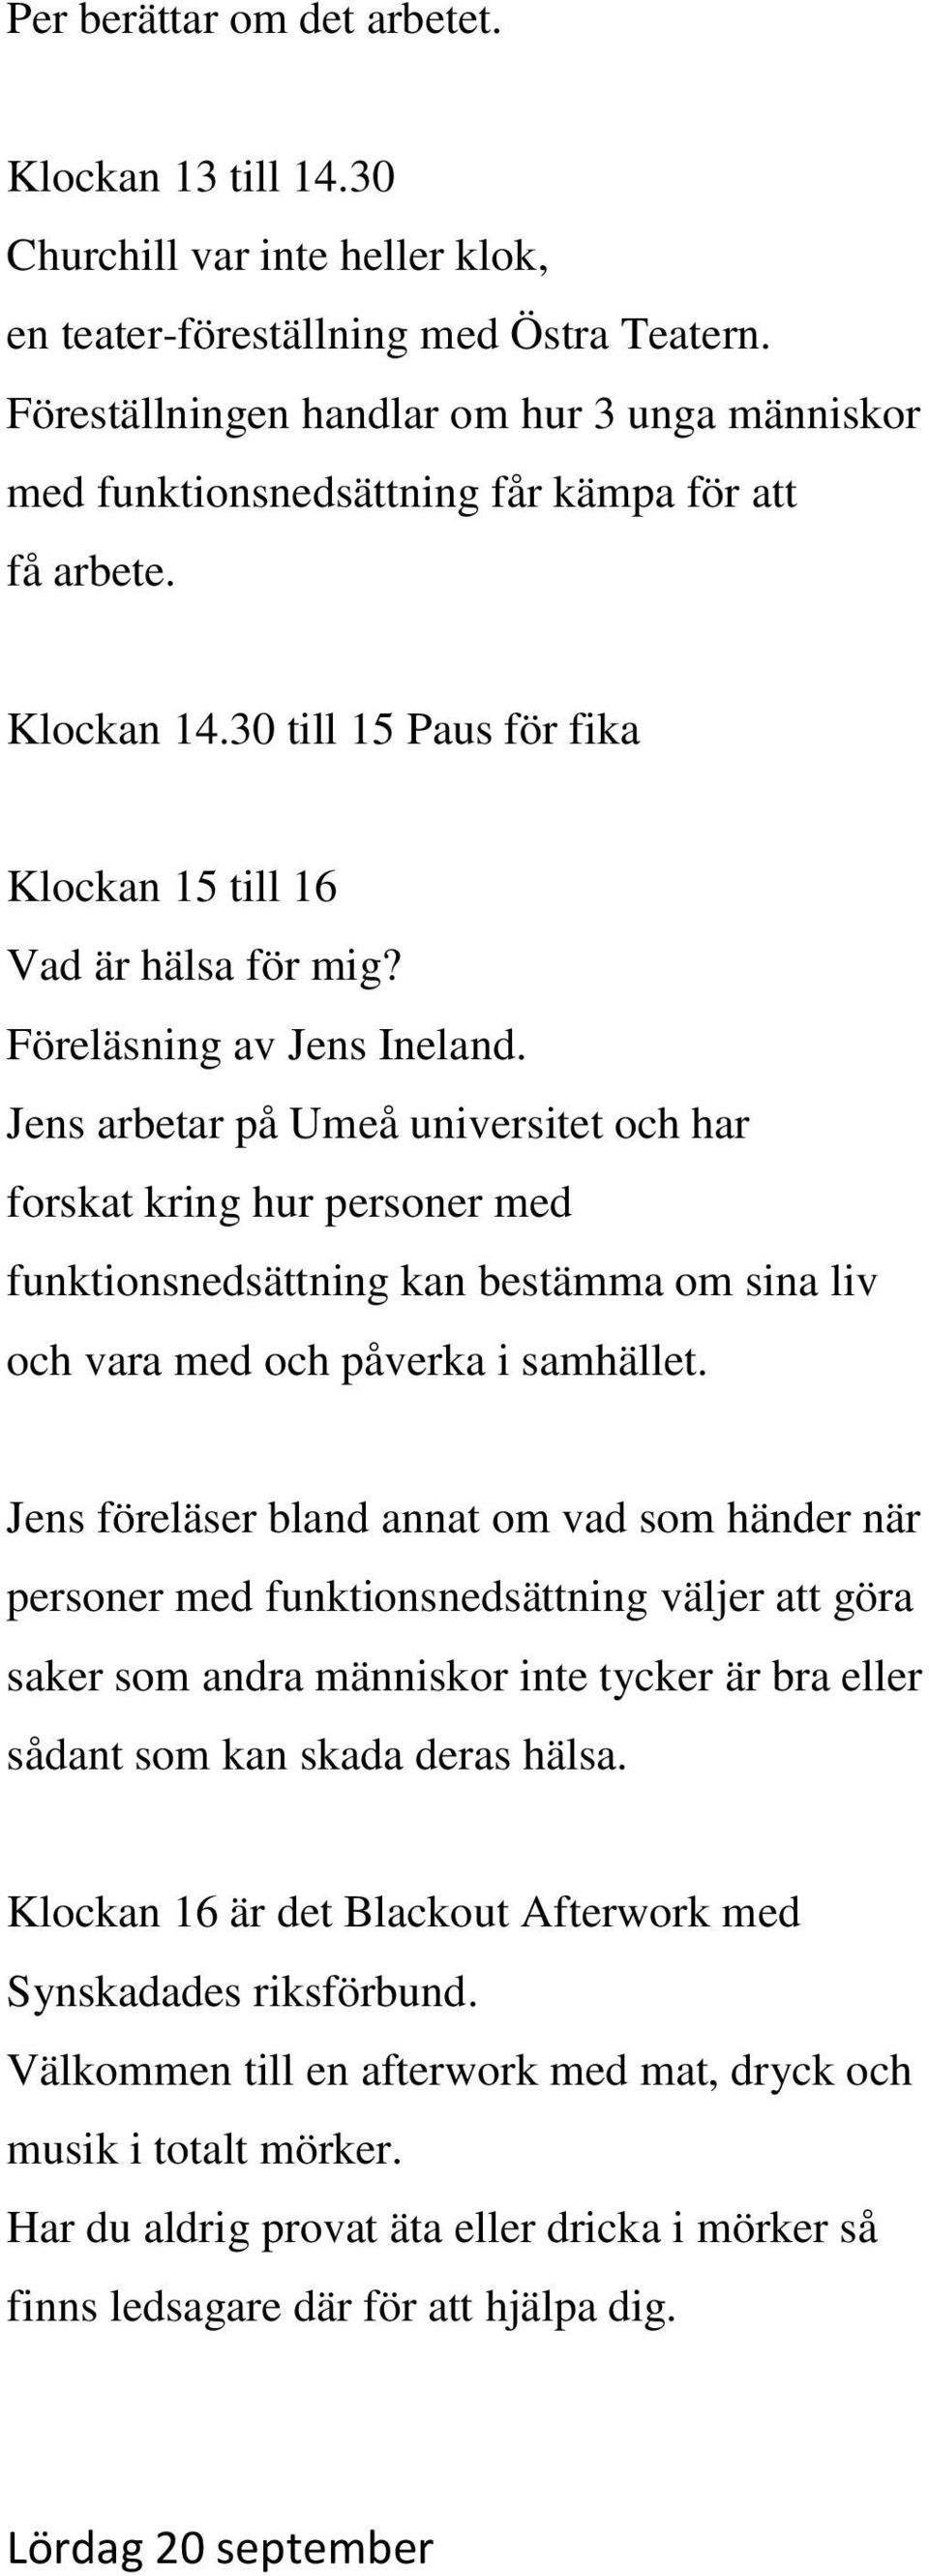 Föreläsning av Jens Ineland. Jens arbetar på Umeå universitet och har forskat kring hur personer med funktionsnedsättning kan bestämma om sina liv och vara med och påverka i samhället.